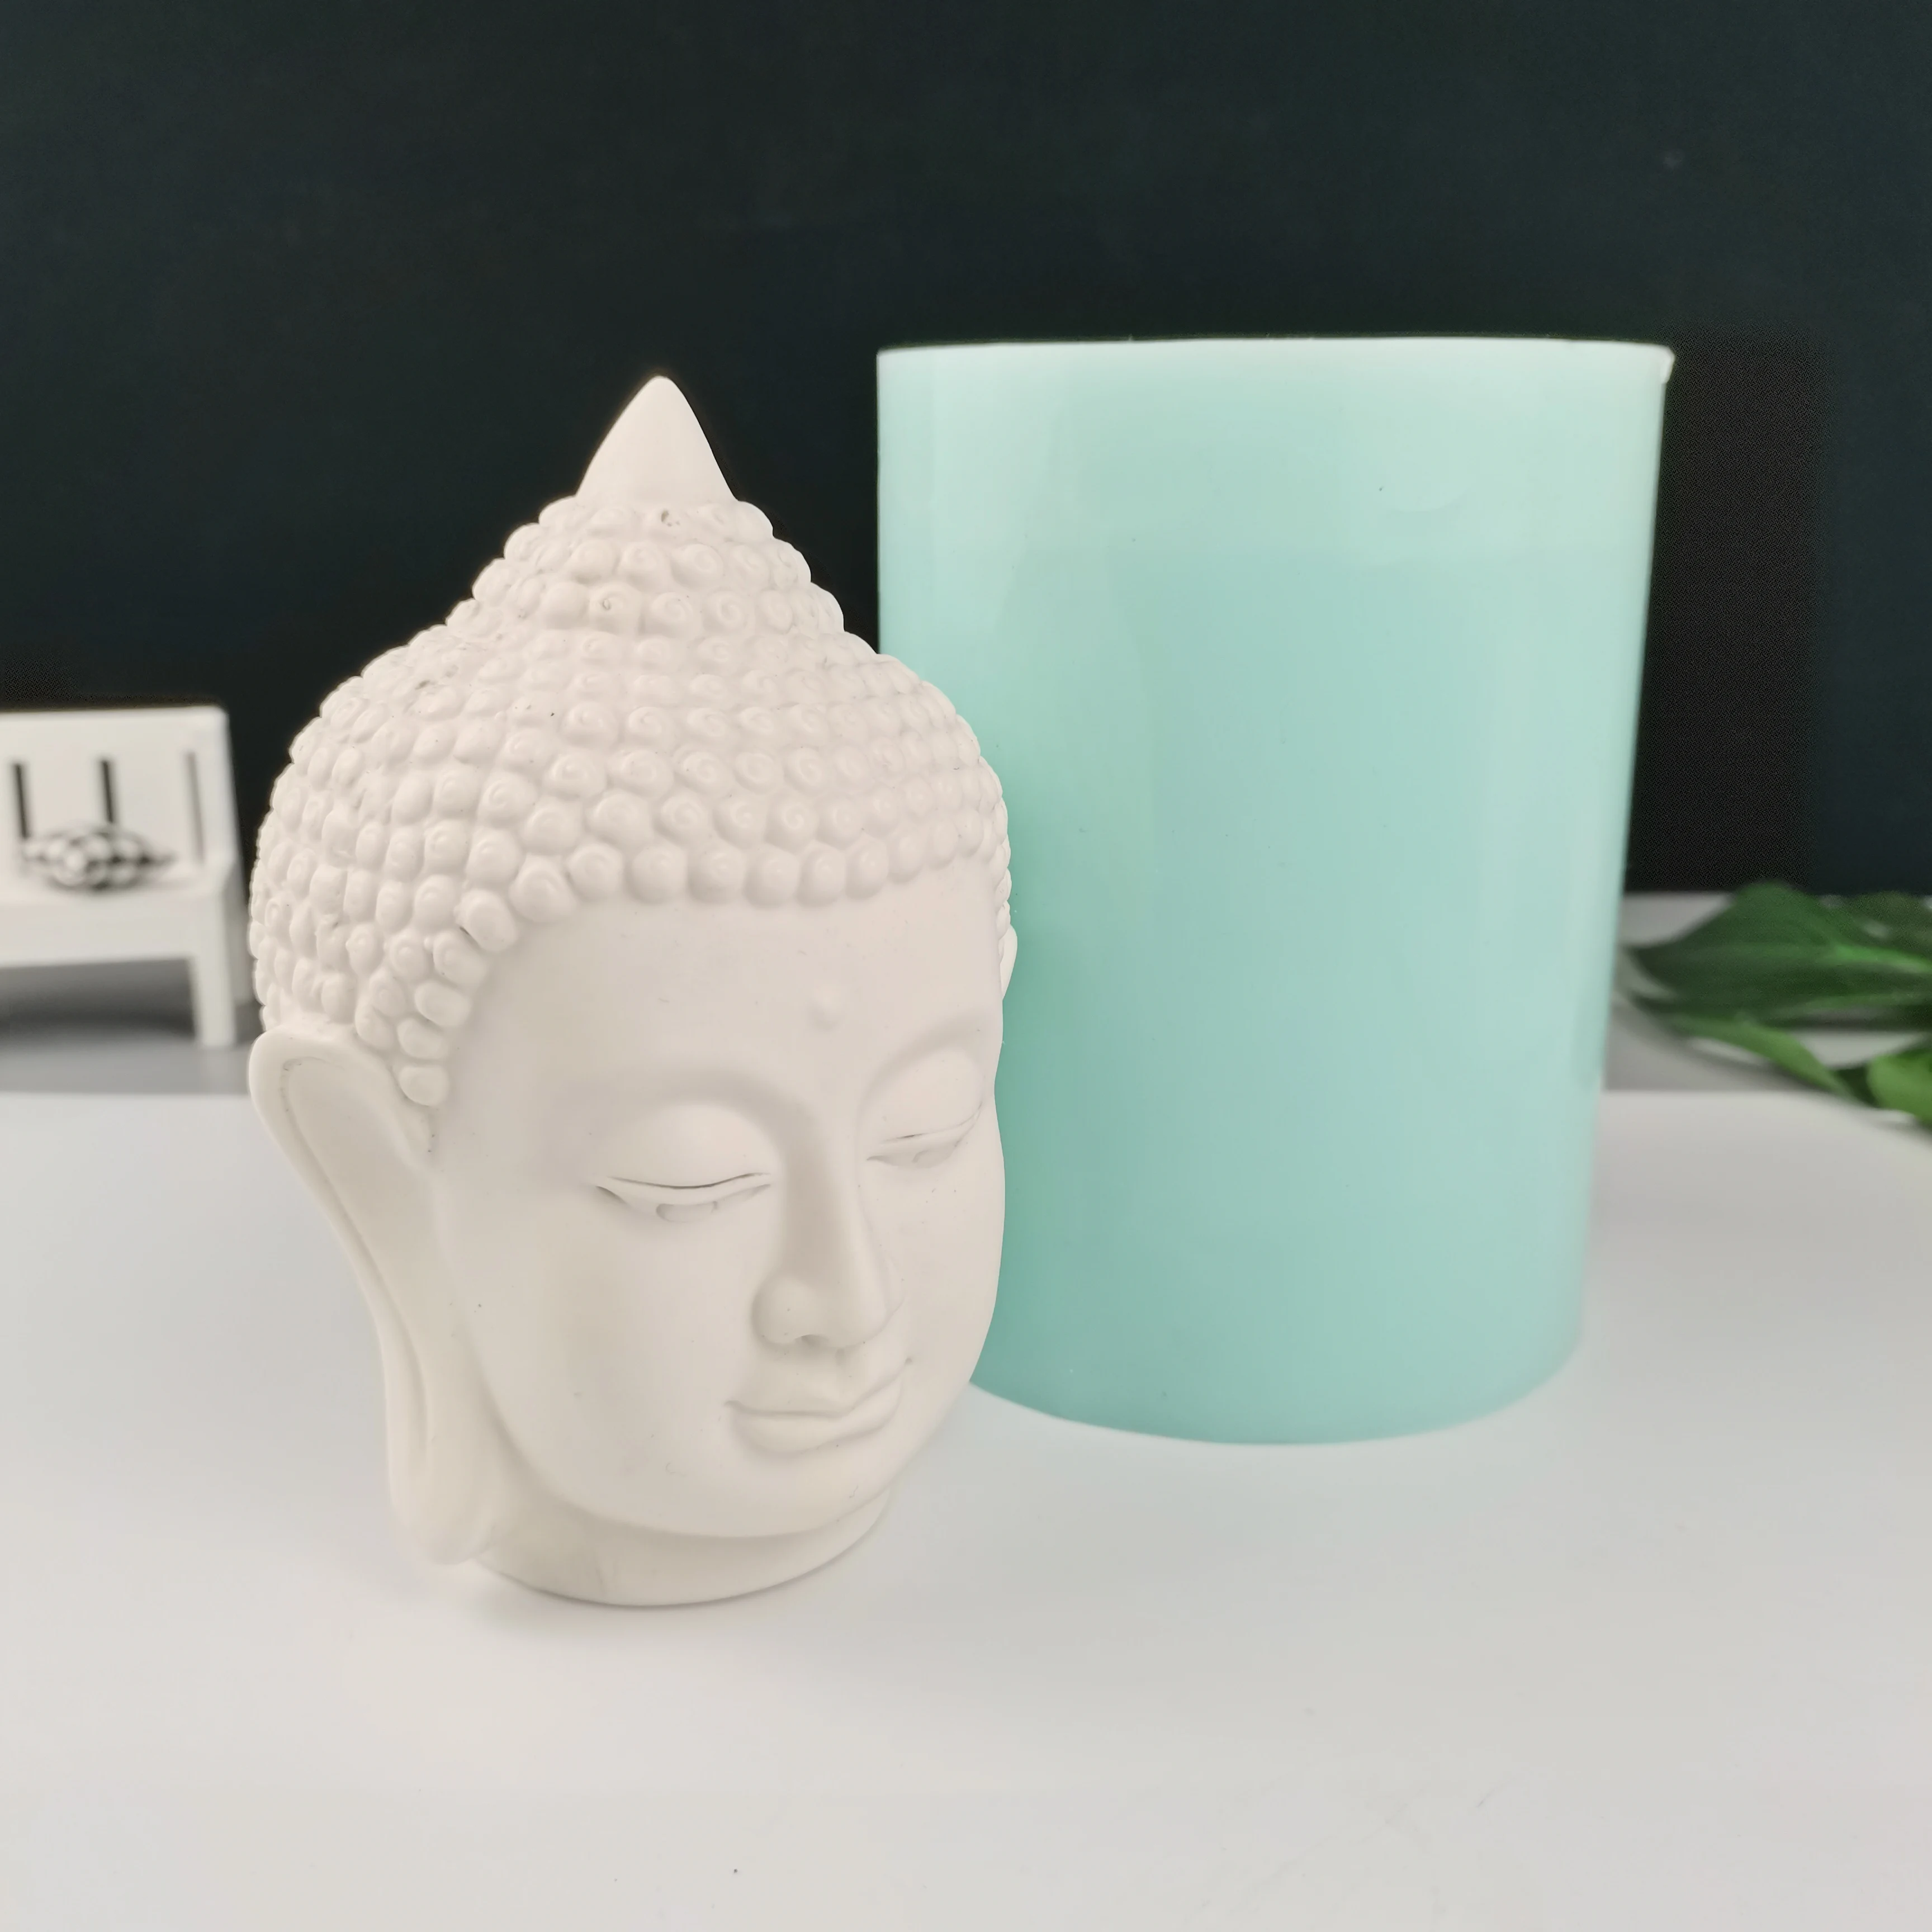 Гипсовая силиконовая 3D форма в виде головы Будды гипсовая декоративная статуя